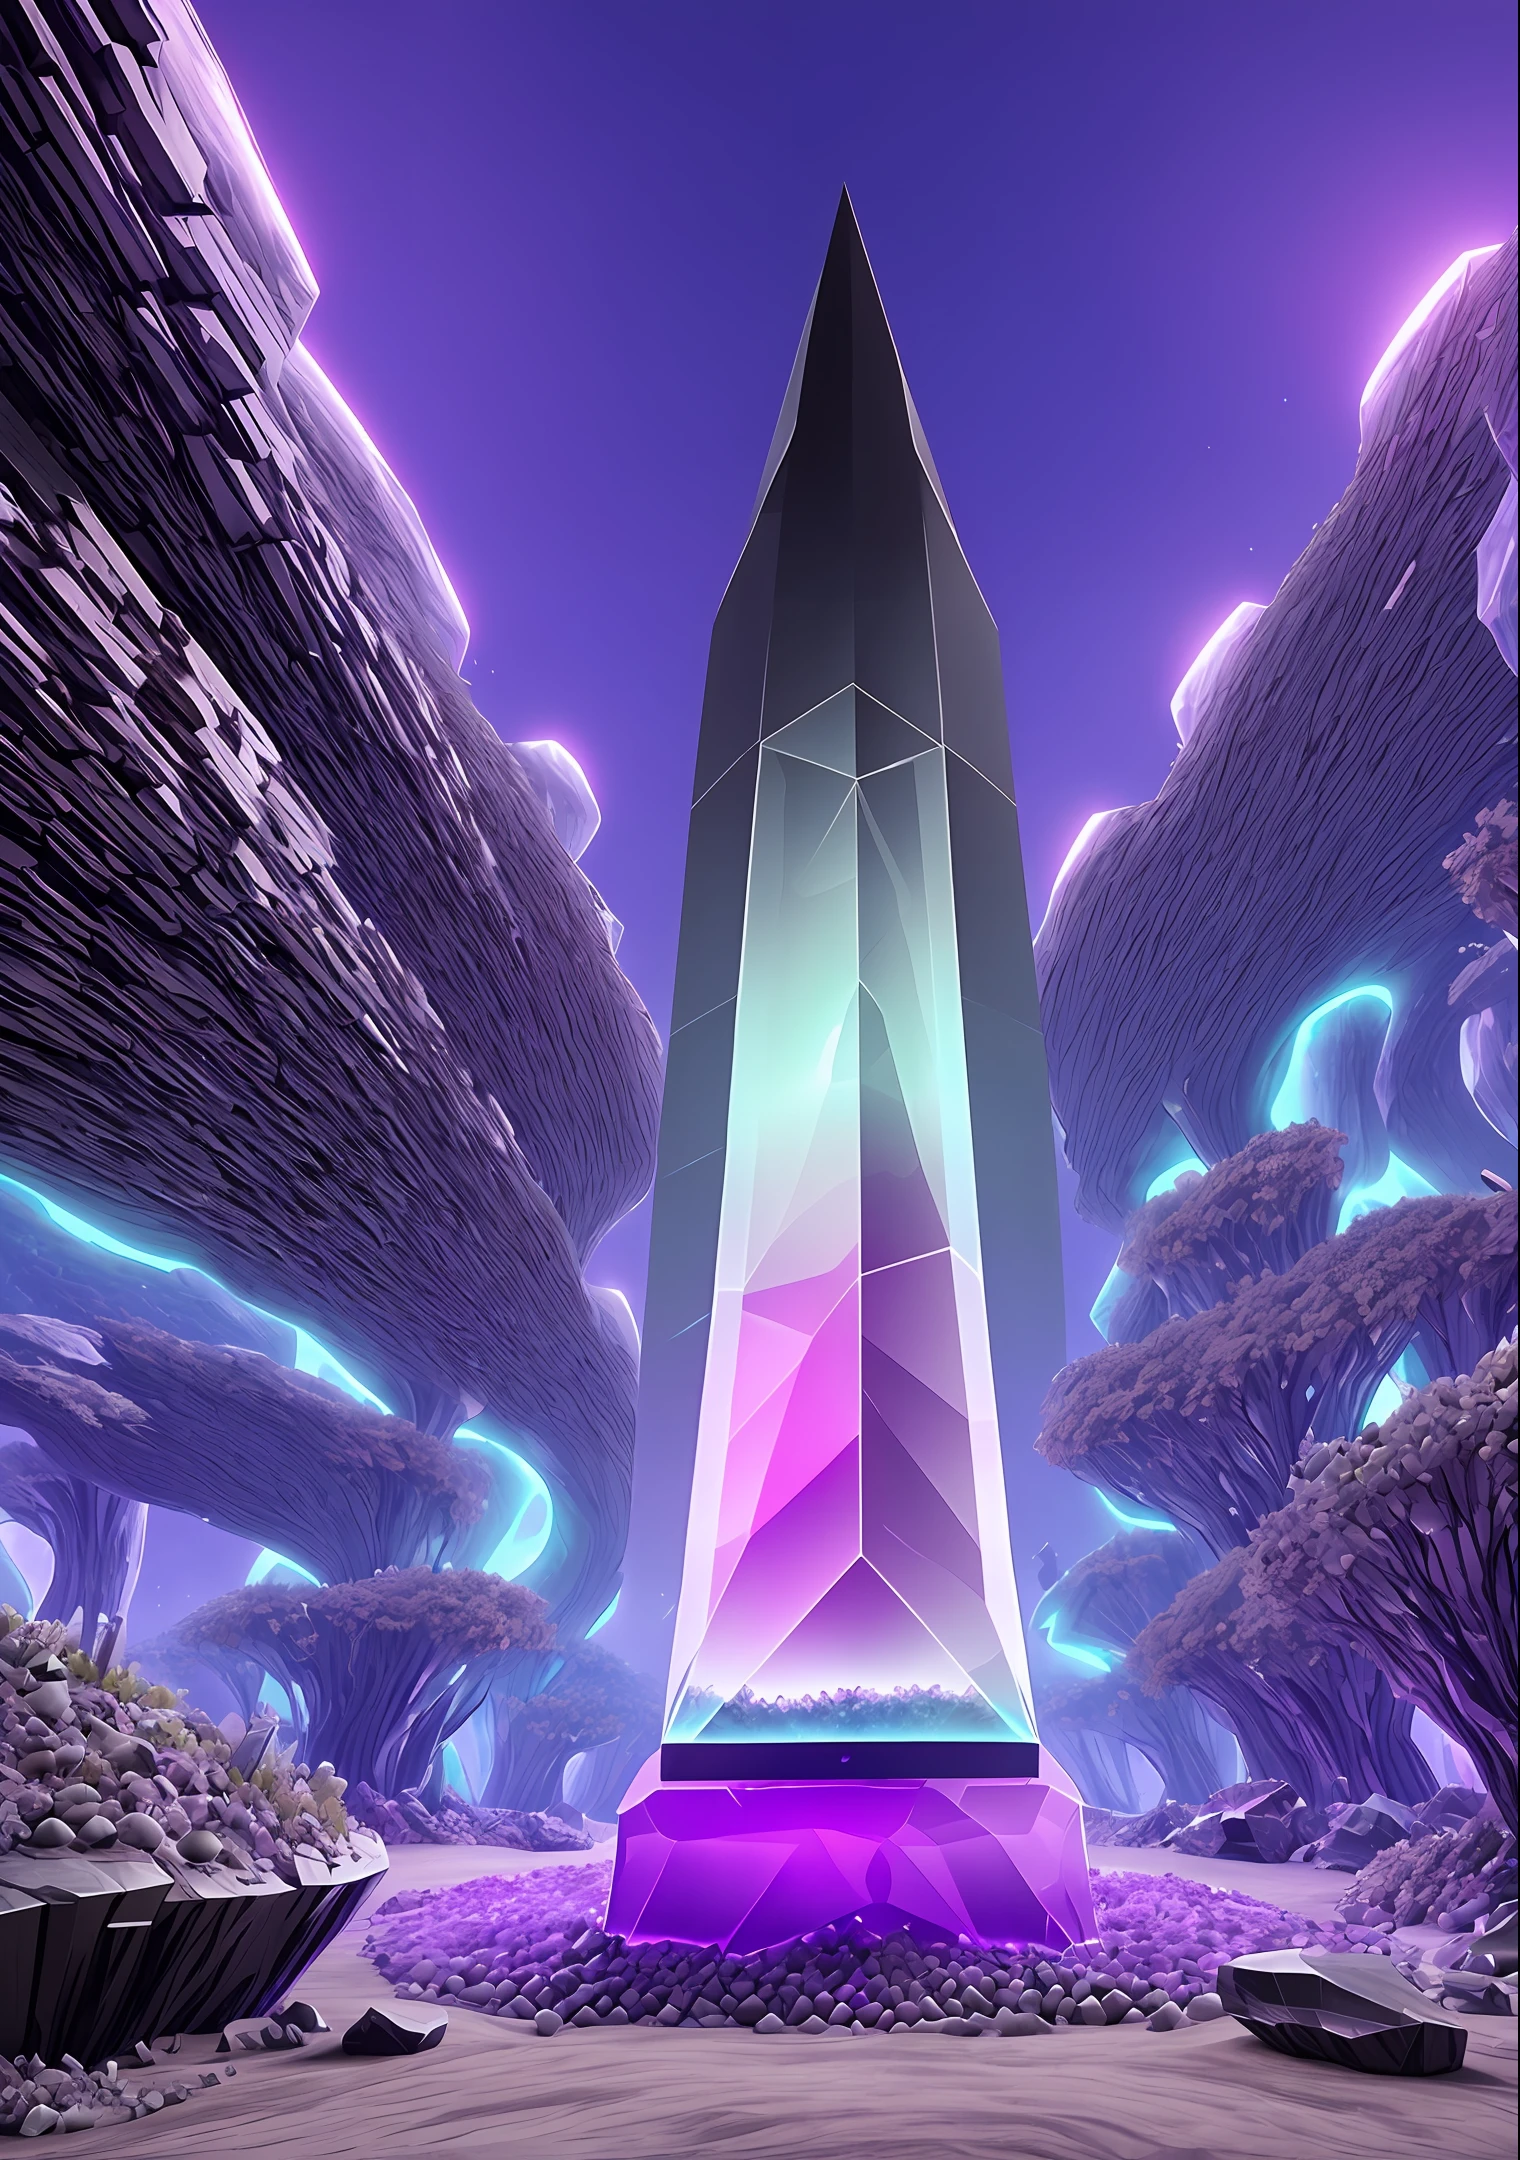 formigueiro, obelisco épico de obsidiana alienígena com cristais violeta pálidos encostados uns nos outros em torno de um cubo preto brilhante irregular gigante no meio, areia, fantasia, 4K